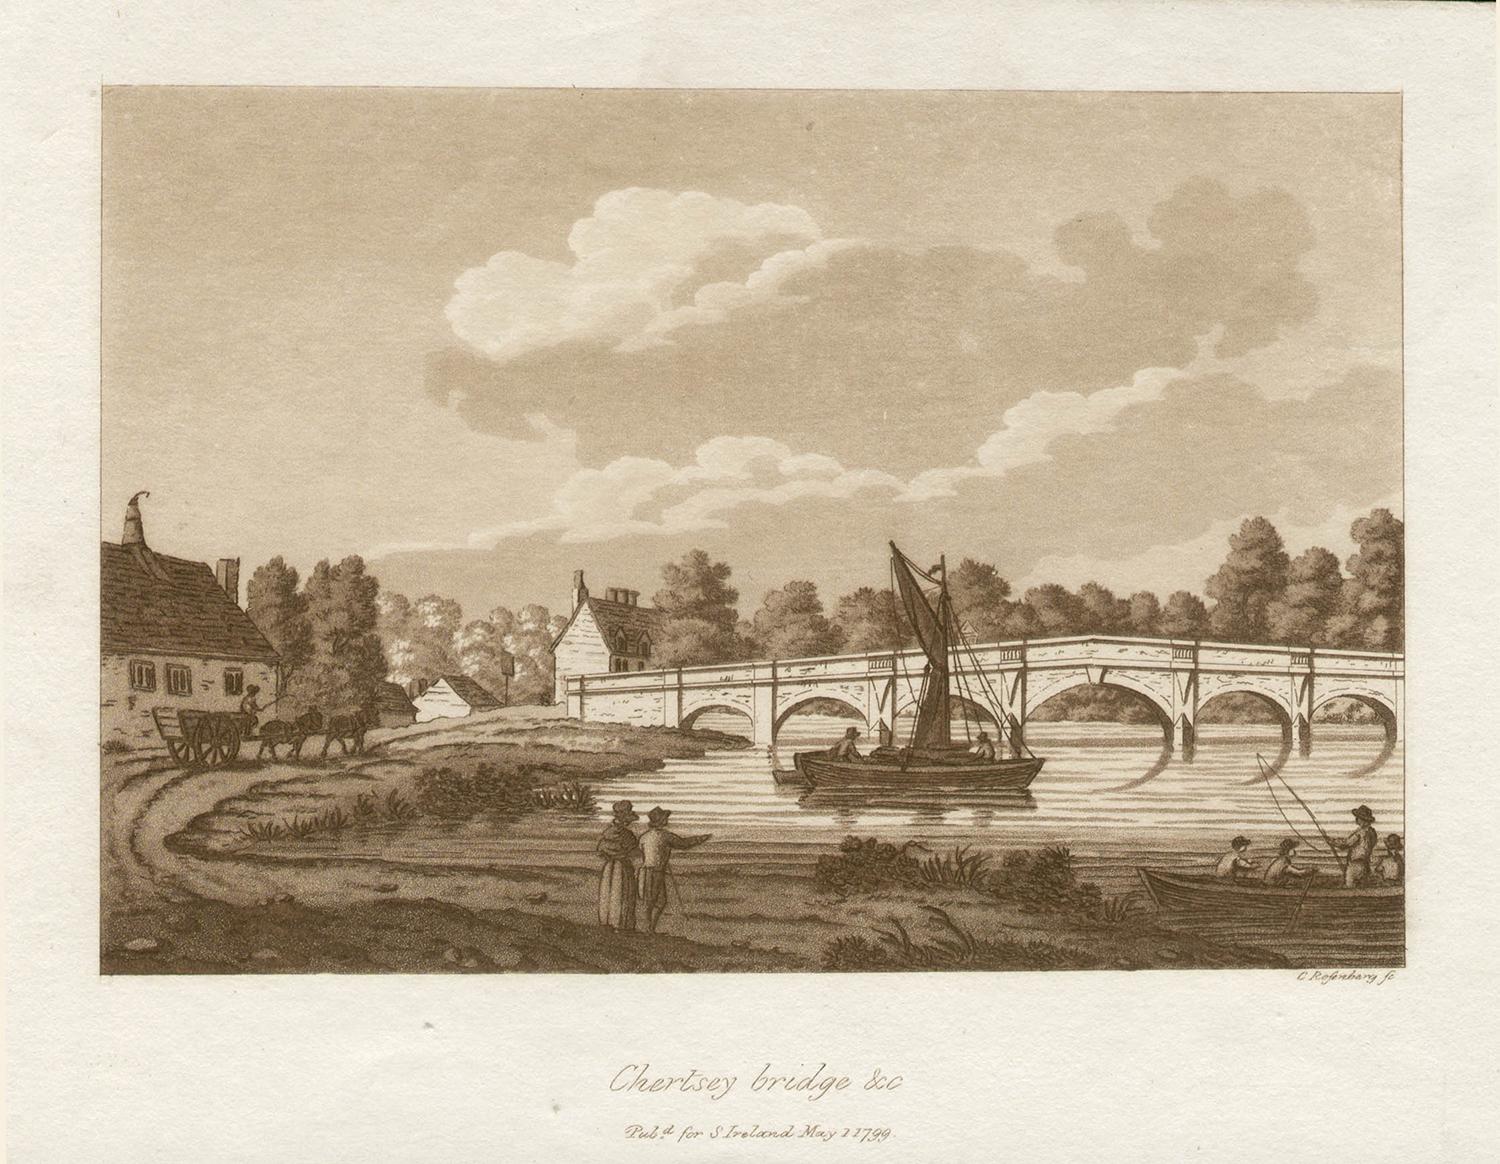 Chertsey Bridge, Surrey, Thames, aquatinte sépia anglaise de la fin du XVIIIe siècle, 1799